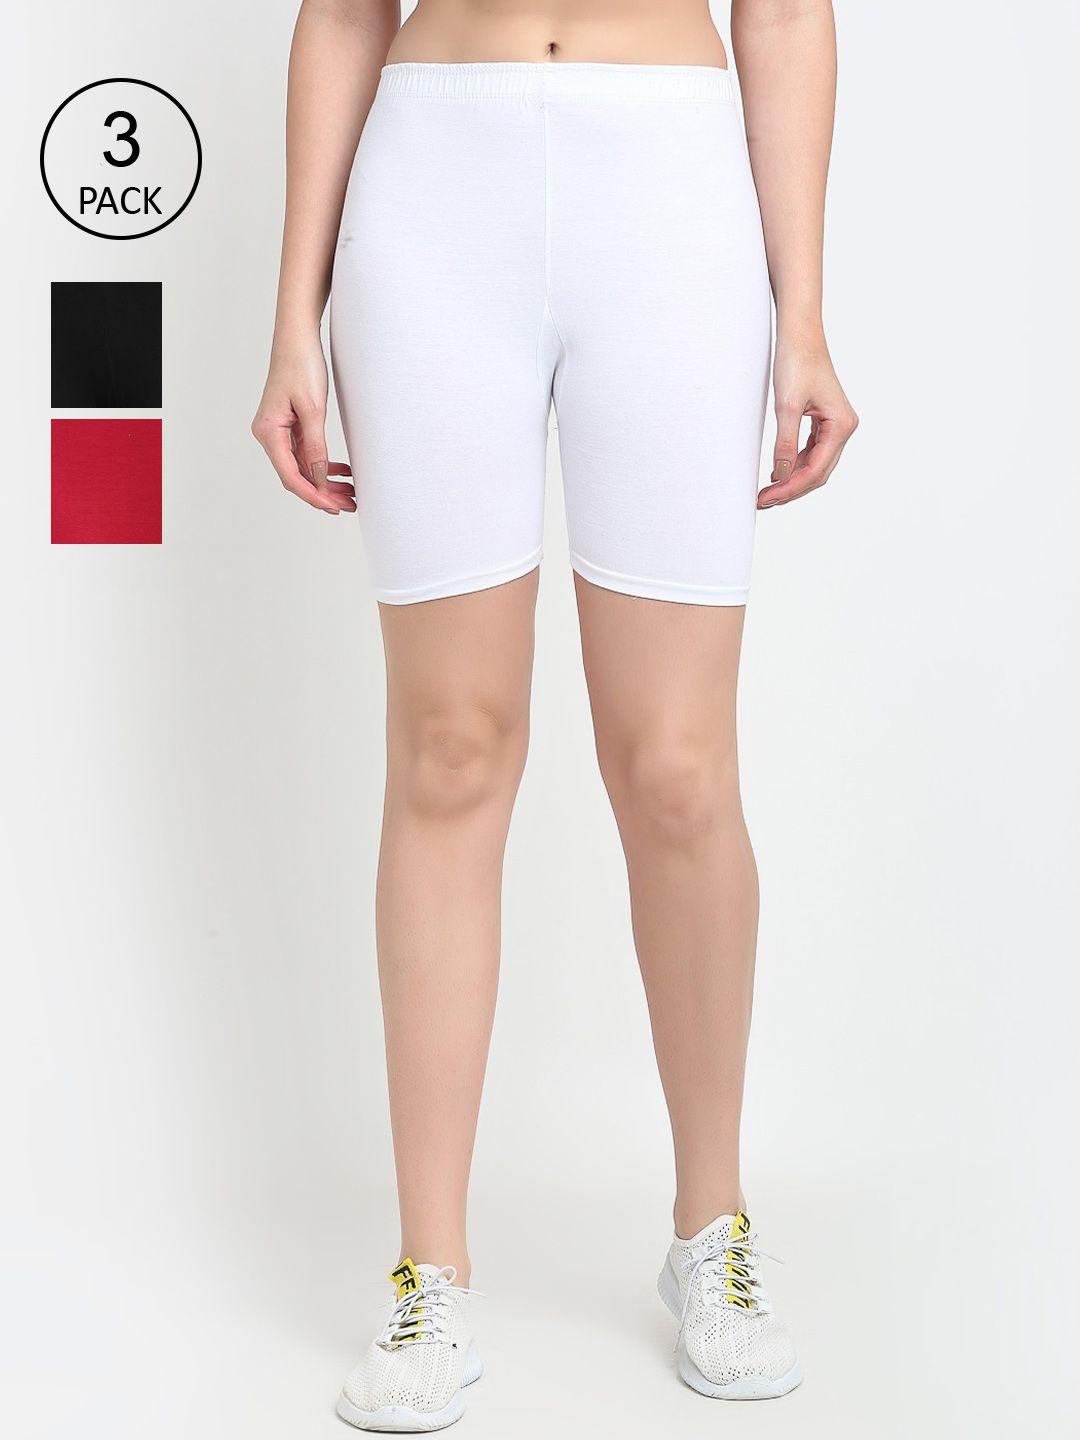 gracit women black white & red set o3 biker shorts